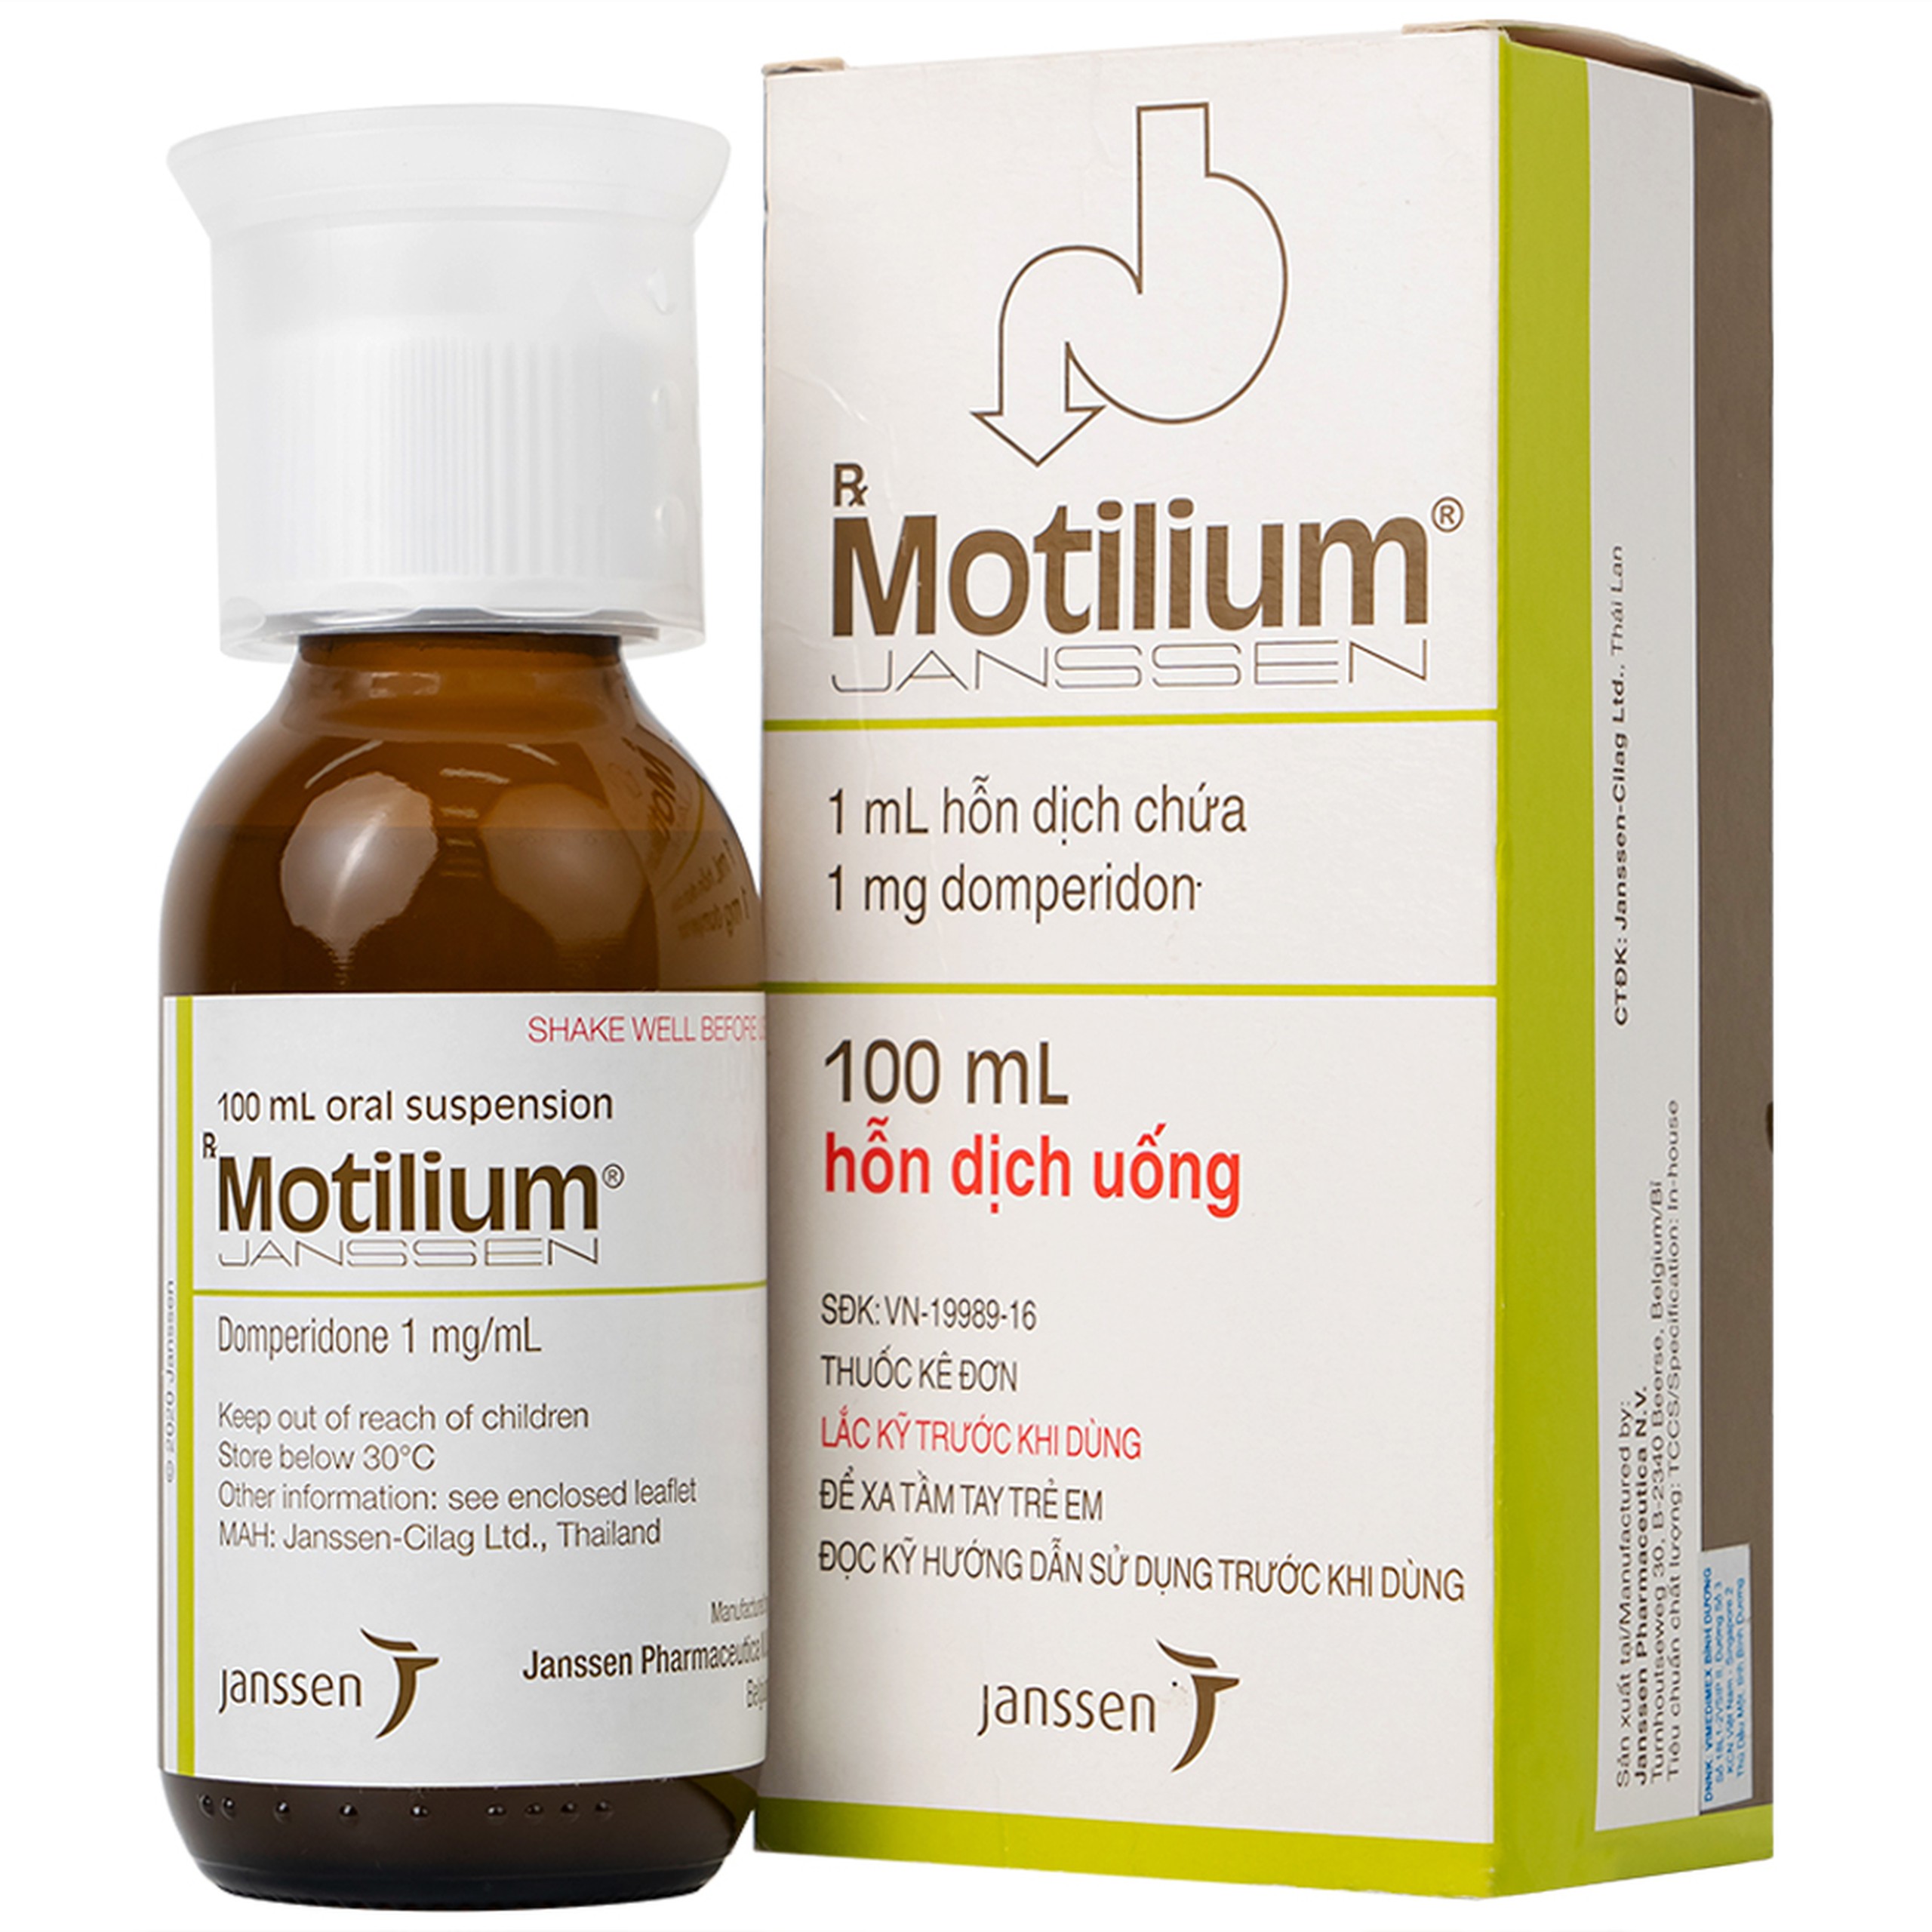 Hỗn dịch uống Motilium Janssen điều trị triệu chứng nôn và buồn nôn (100ml)